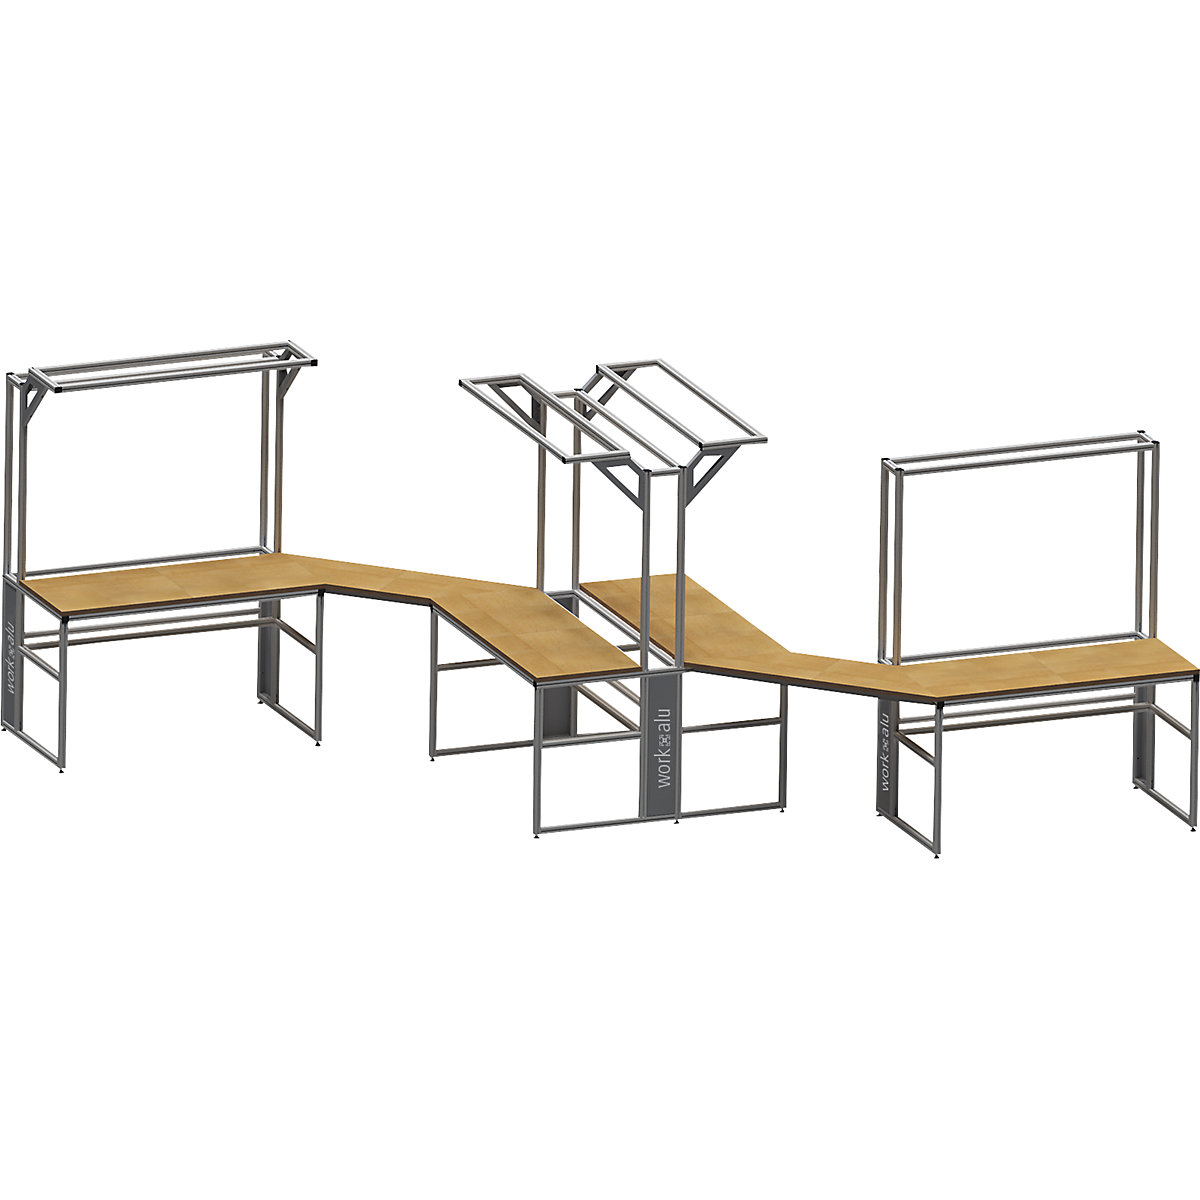 Stół warsztatowy aluminiowy workalu®, szkielet podstawowy dwustronny – bedrunka hirth (Zdjęcie produktu 4)-3